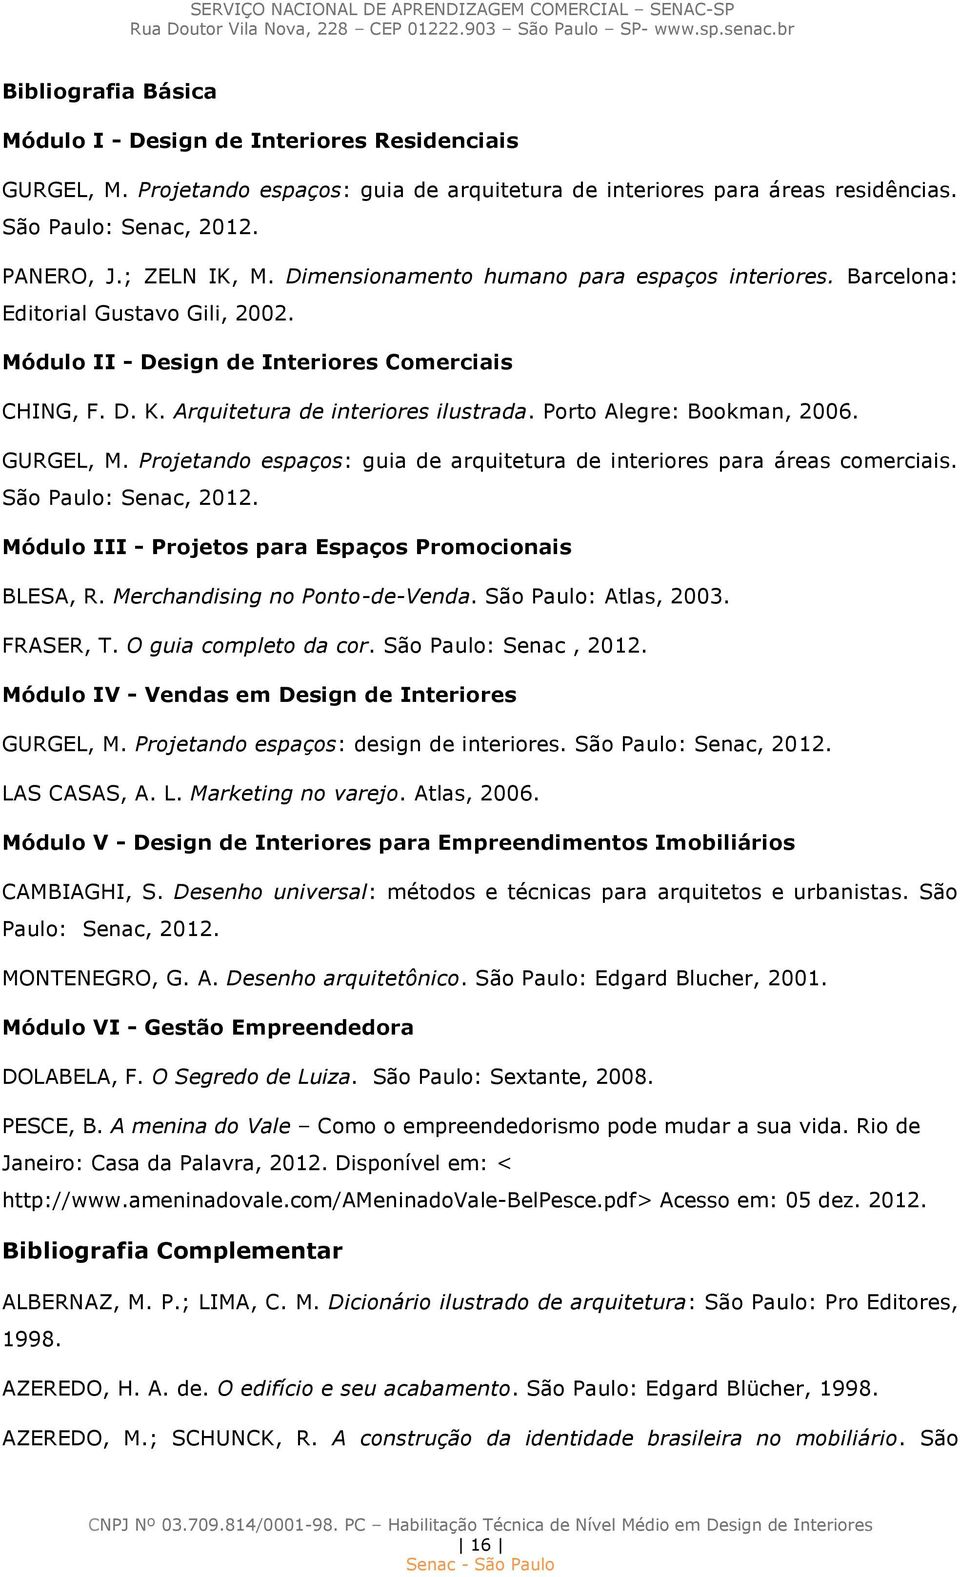 Porto Alegre: Bookman, 2006. GURGEL, M. Projetando espaços: guia de arquitetura de interiores para áreas comerciais. São Paulo: Senac, 2012. Módulo III - Projetos para Espaços Promocionais BLESA, R.